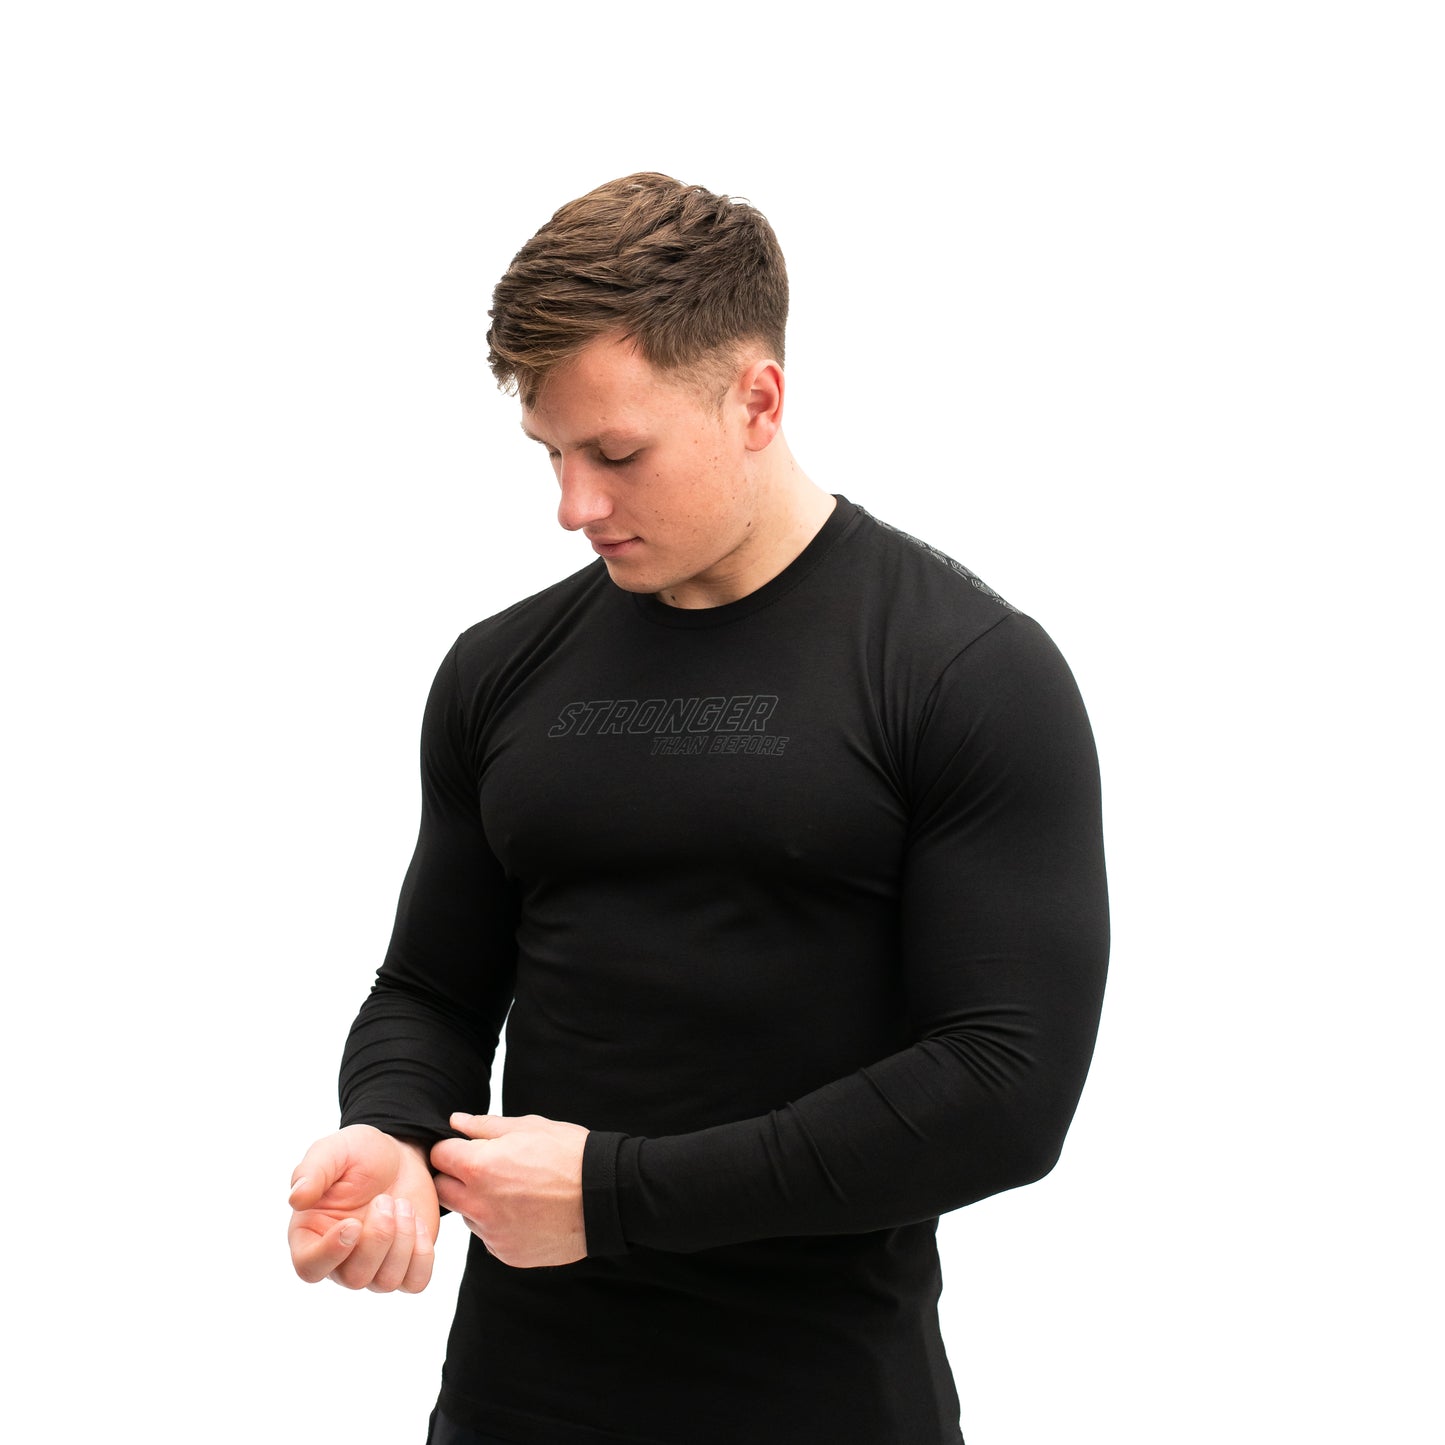 
                  
                    Conquer Bar Grip Unisex Long Sleeve Shirt
                  
                